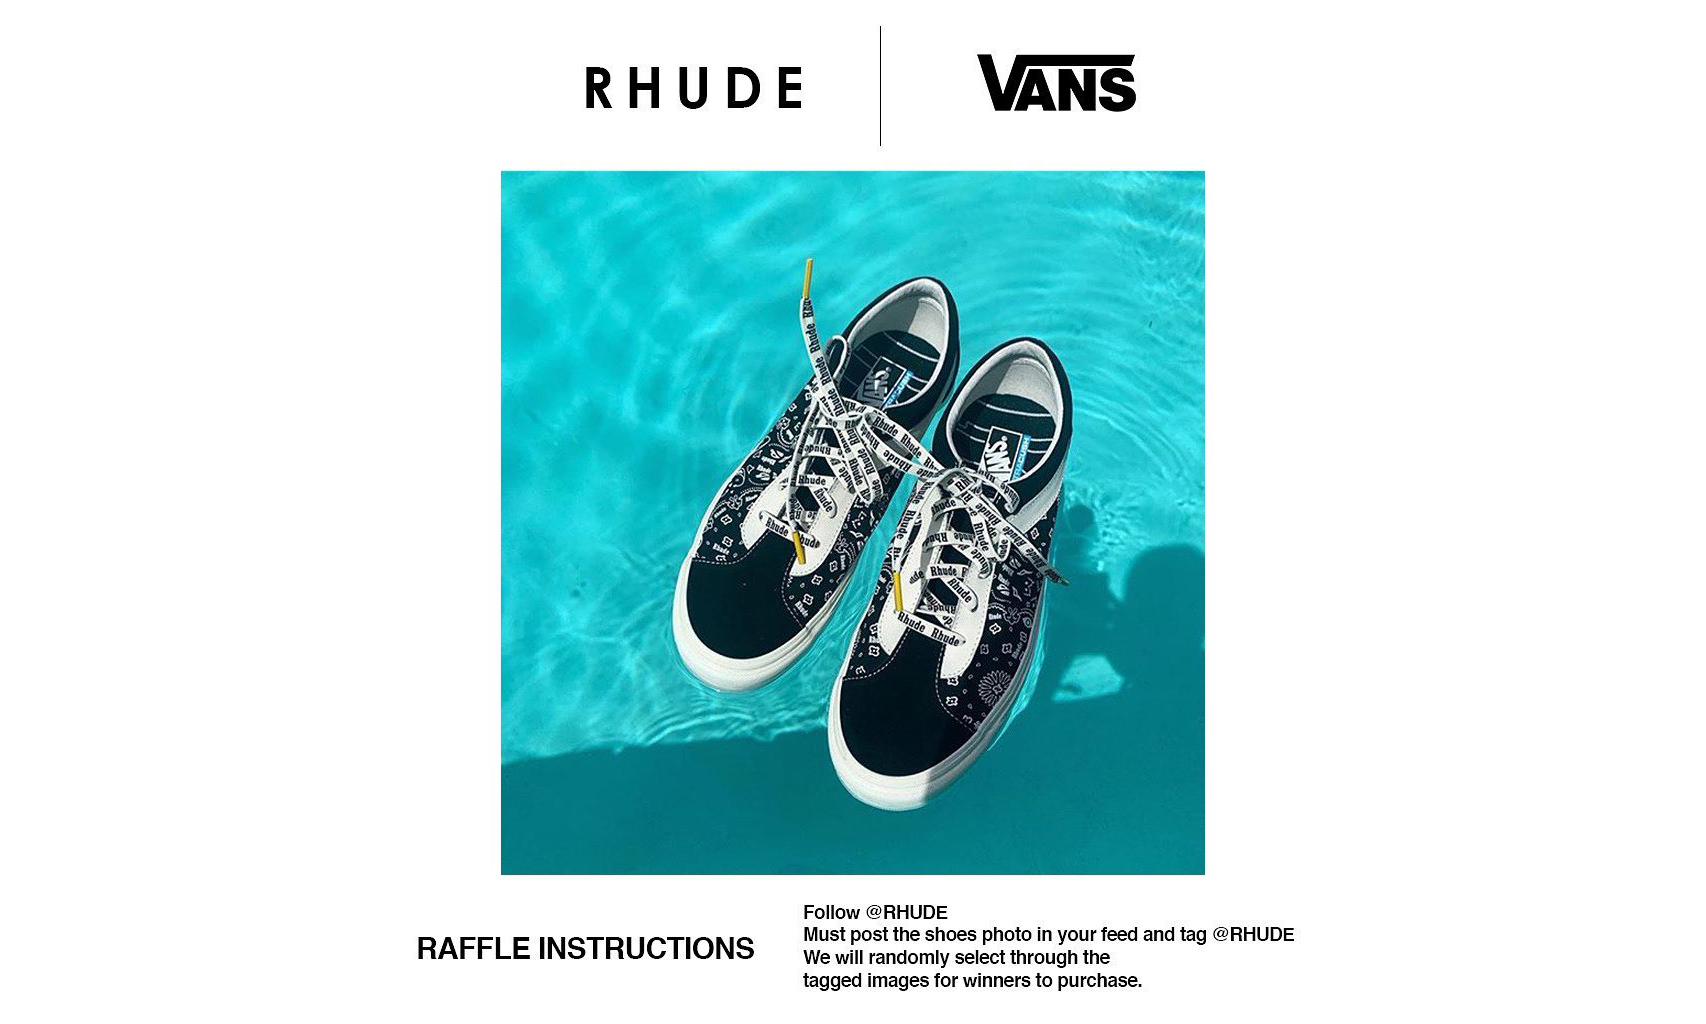 RHUDE x Vans 联名系列现已开启发售登记